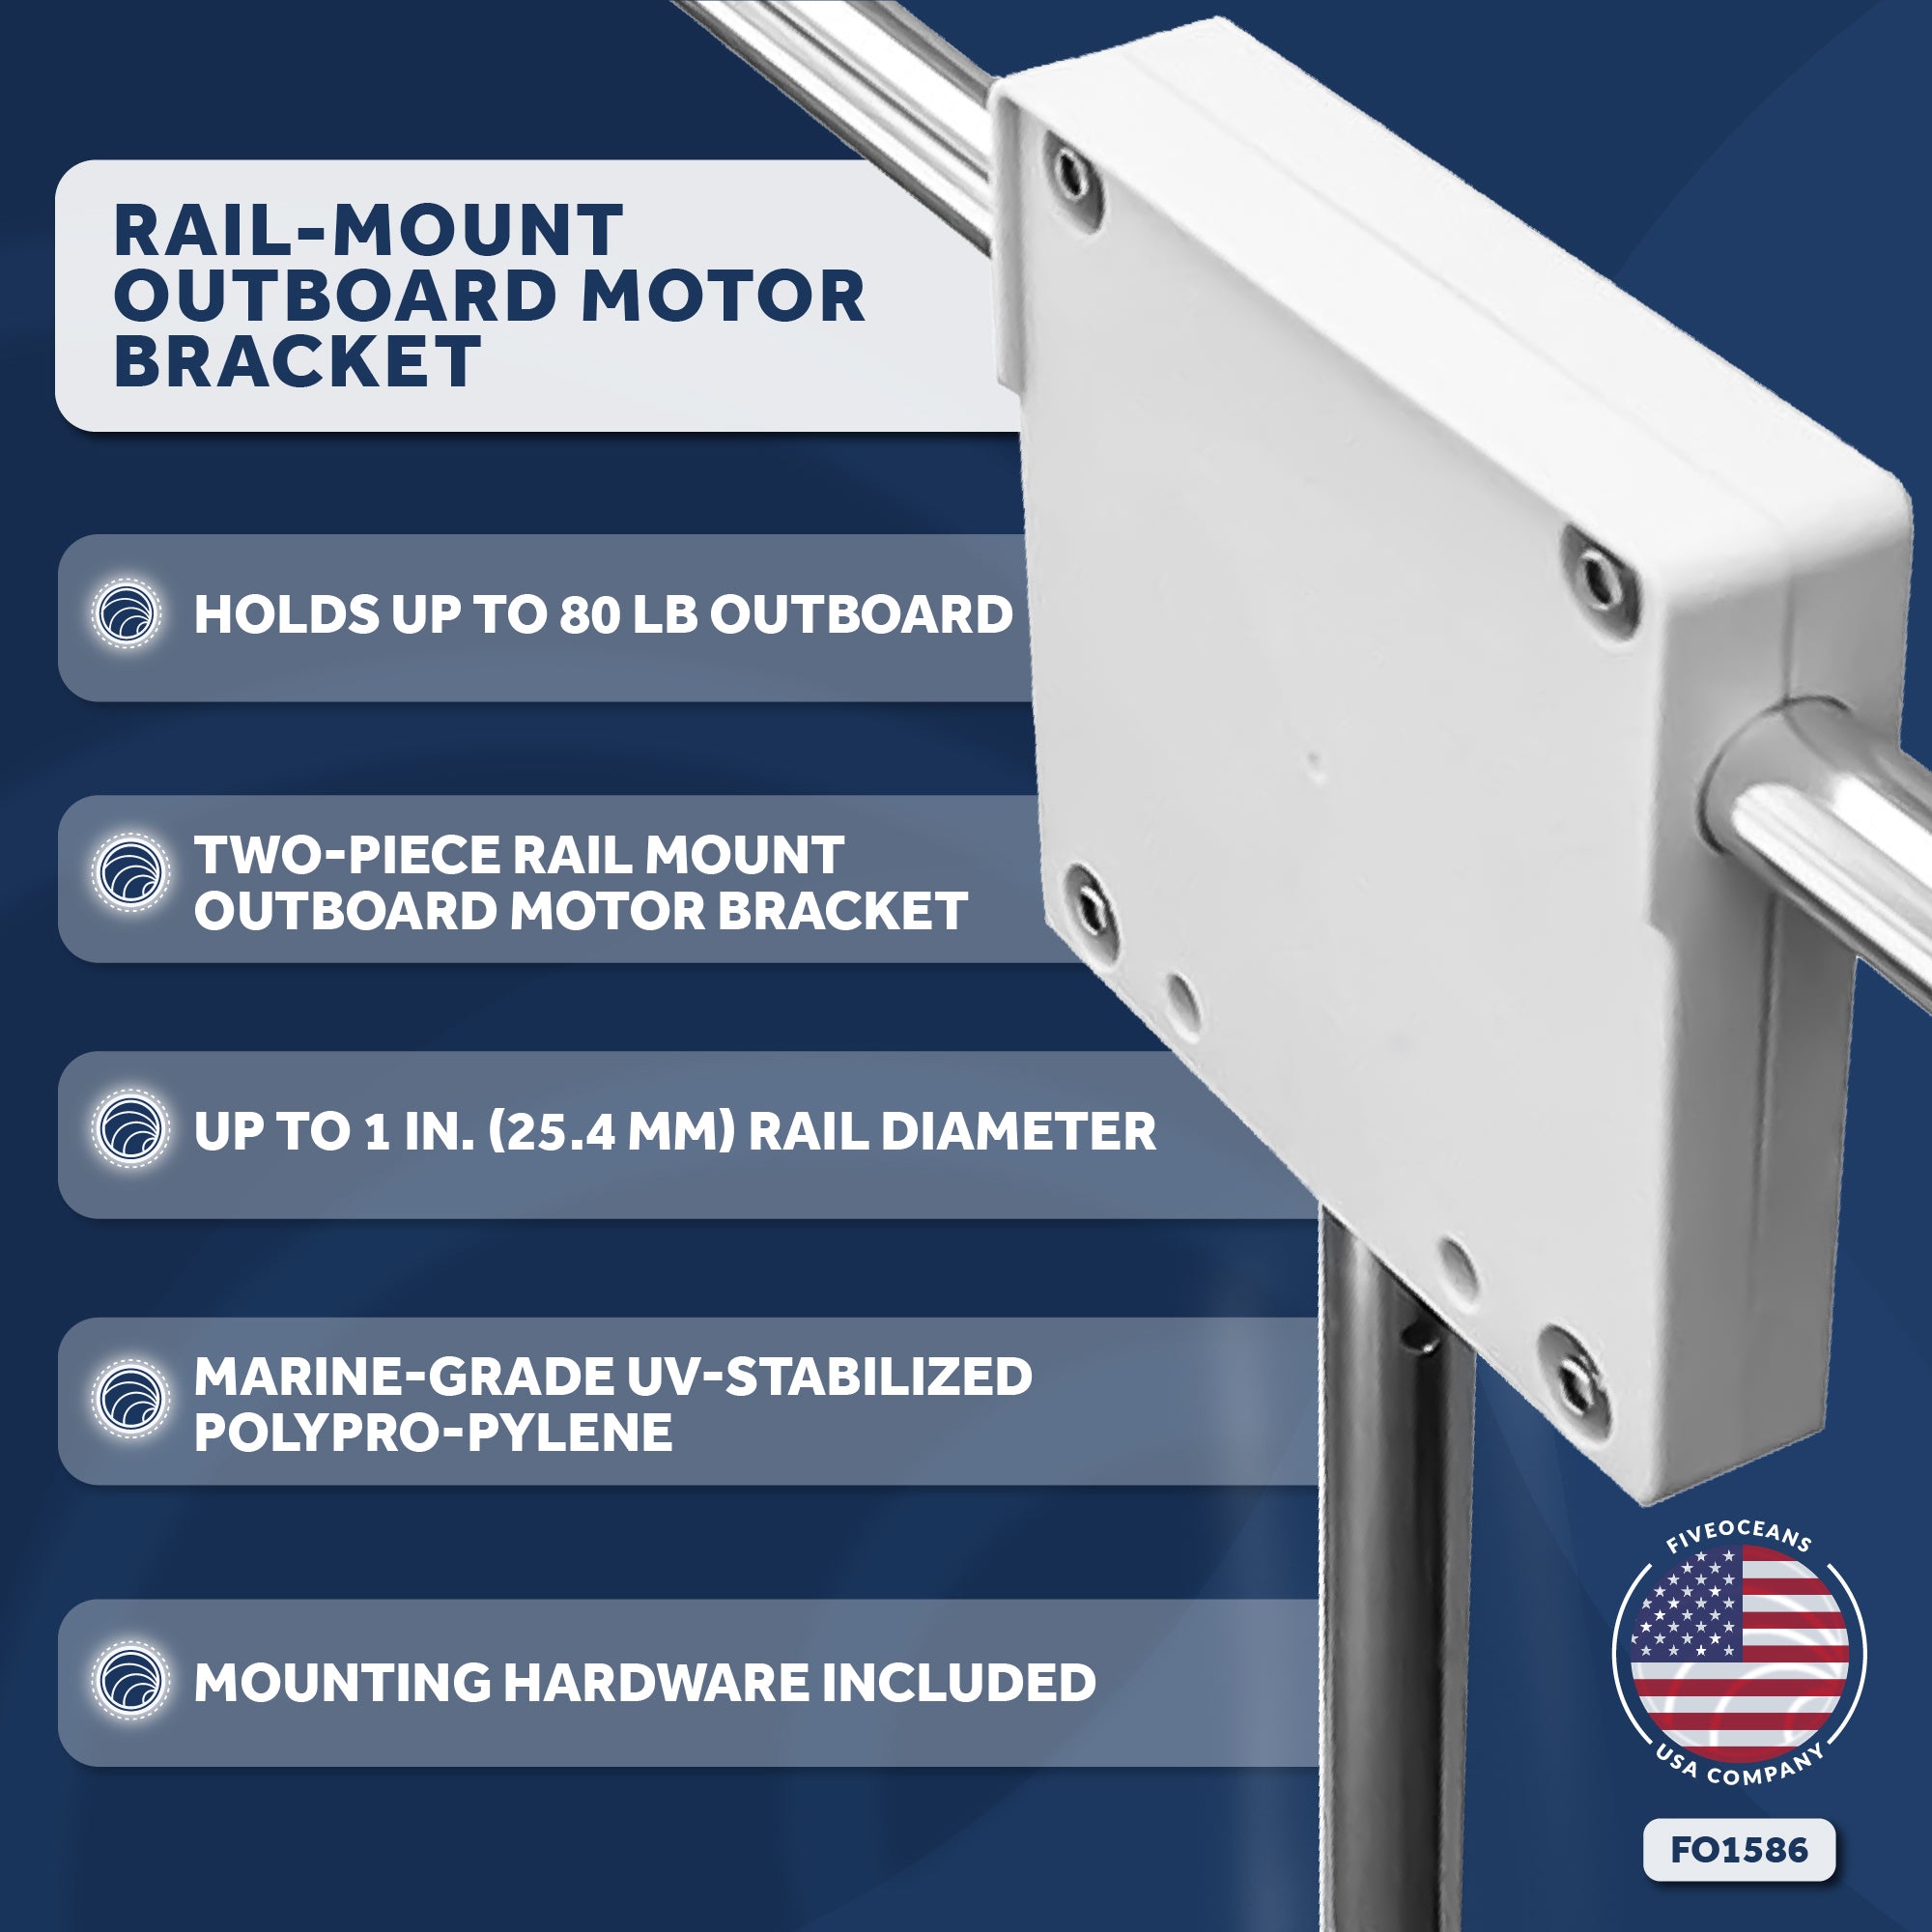 Rail-Mount Outboard Motor Bracket - FO1586